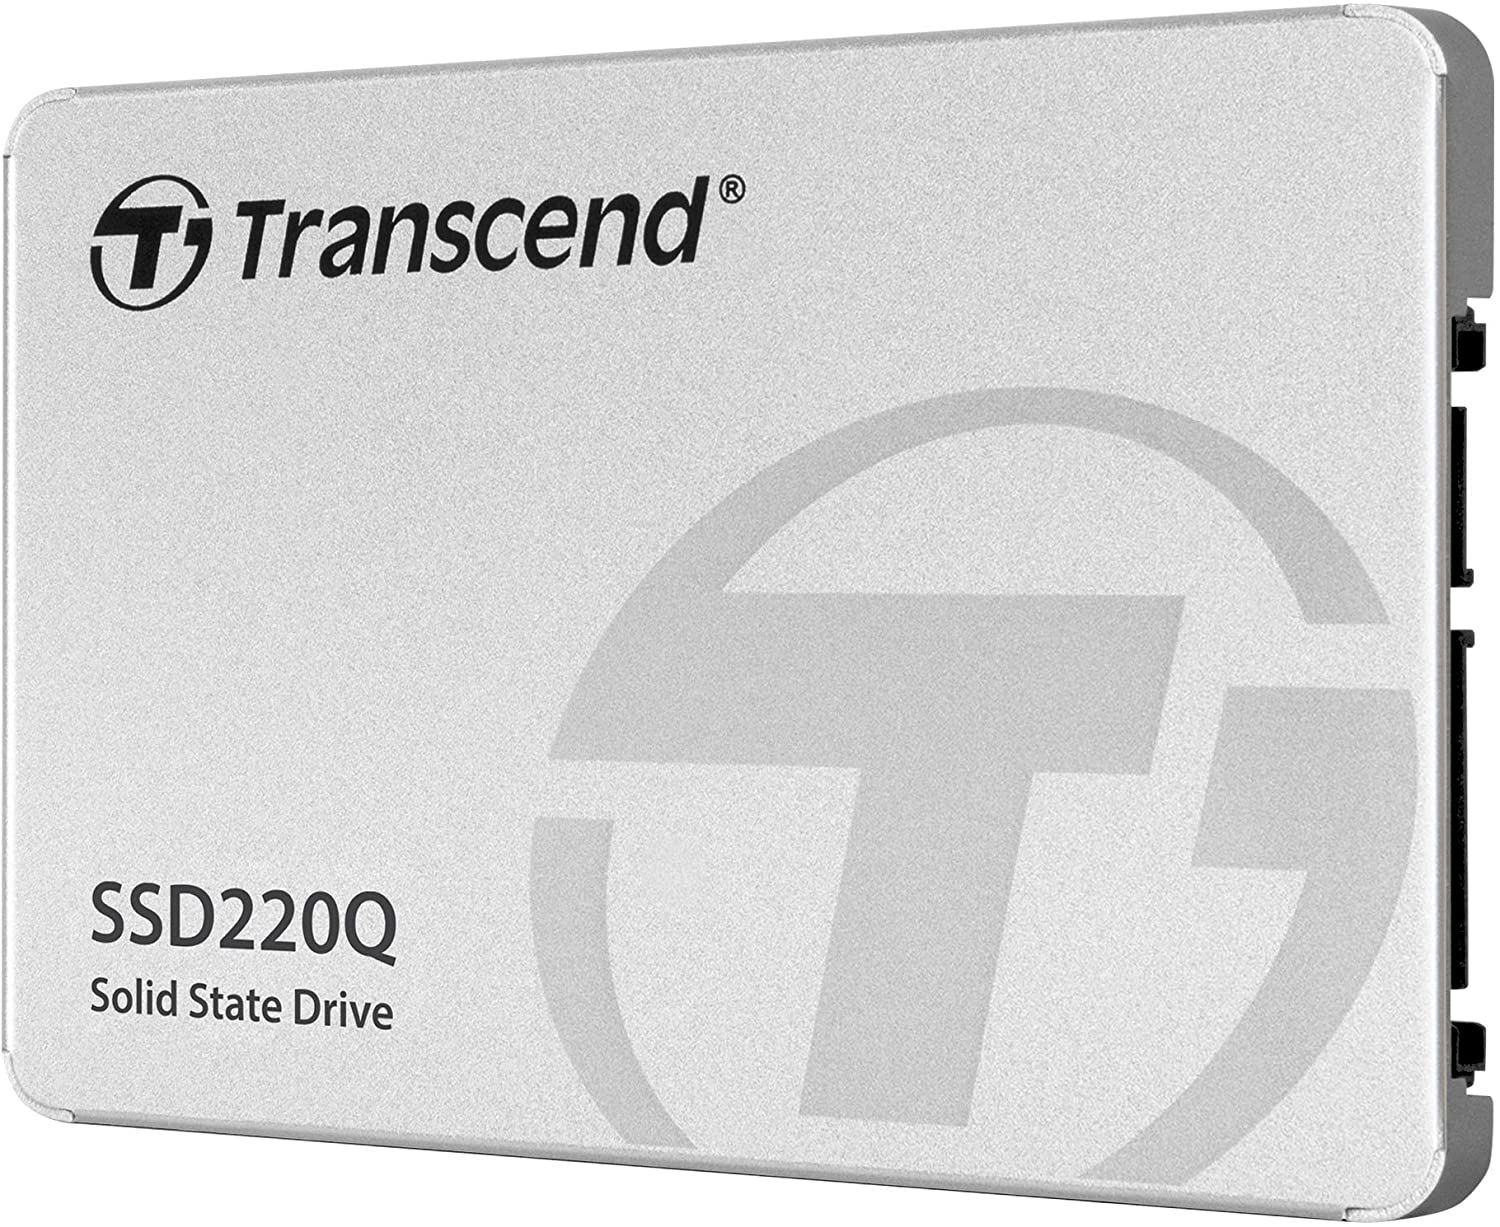 TRANSCEND 500GB 2.5" SSD HDD SATA3 QLC - TS500GSSD220Q